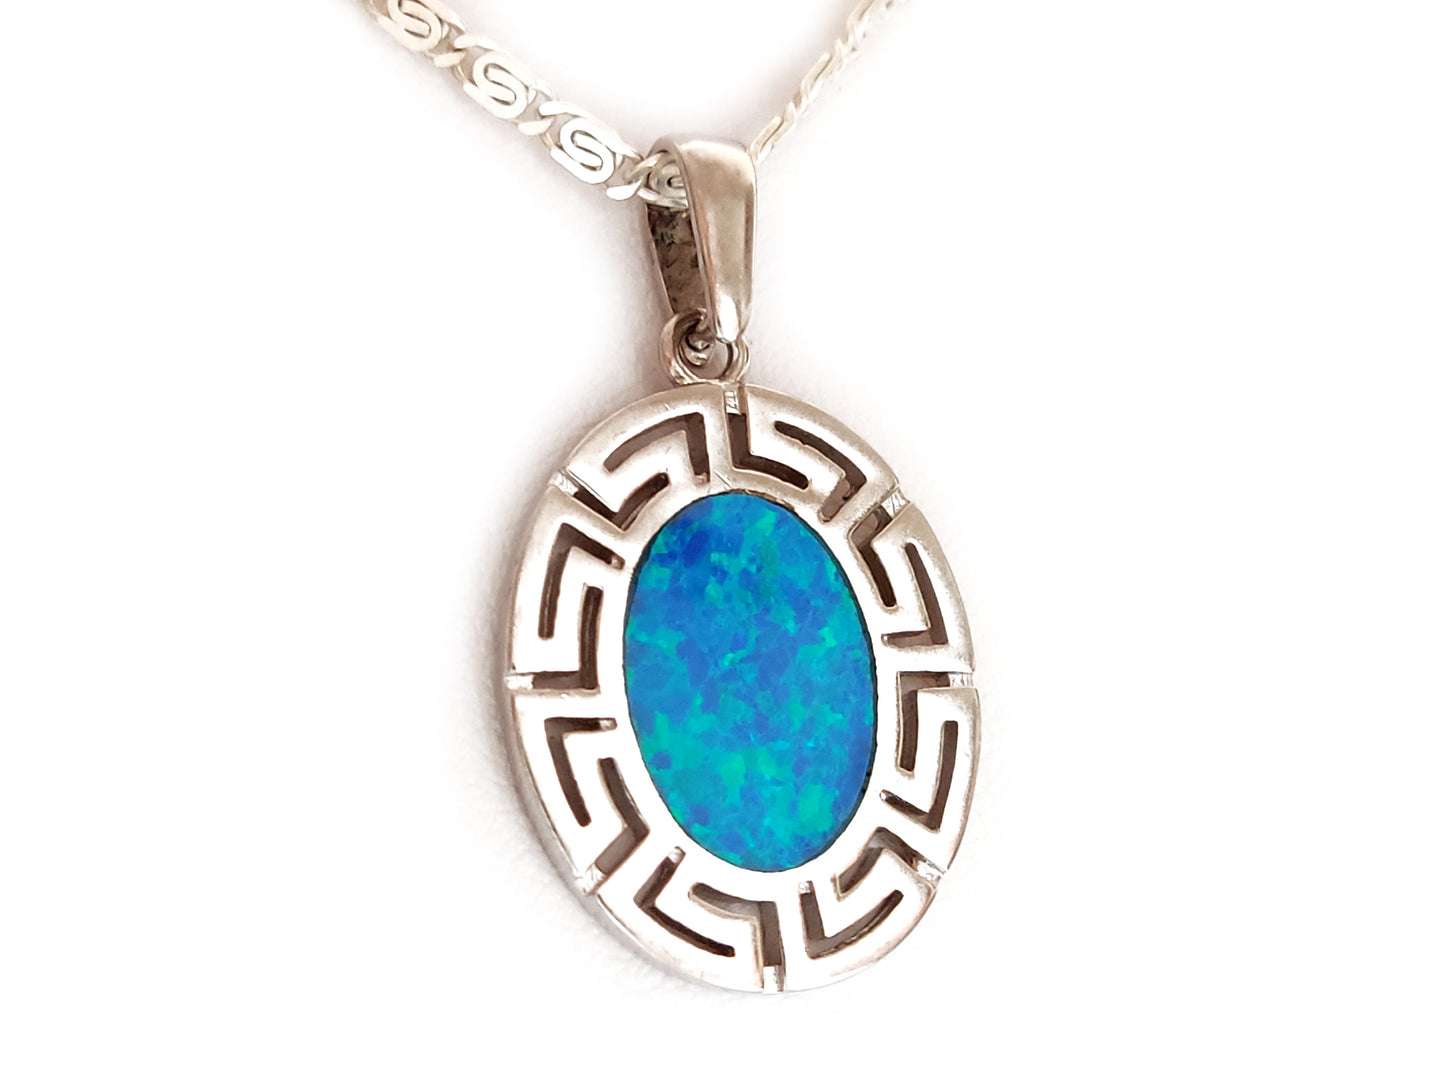 Collier avec pendentif ovale en opale bleue, argent grec, 23x20mm, chaîne 